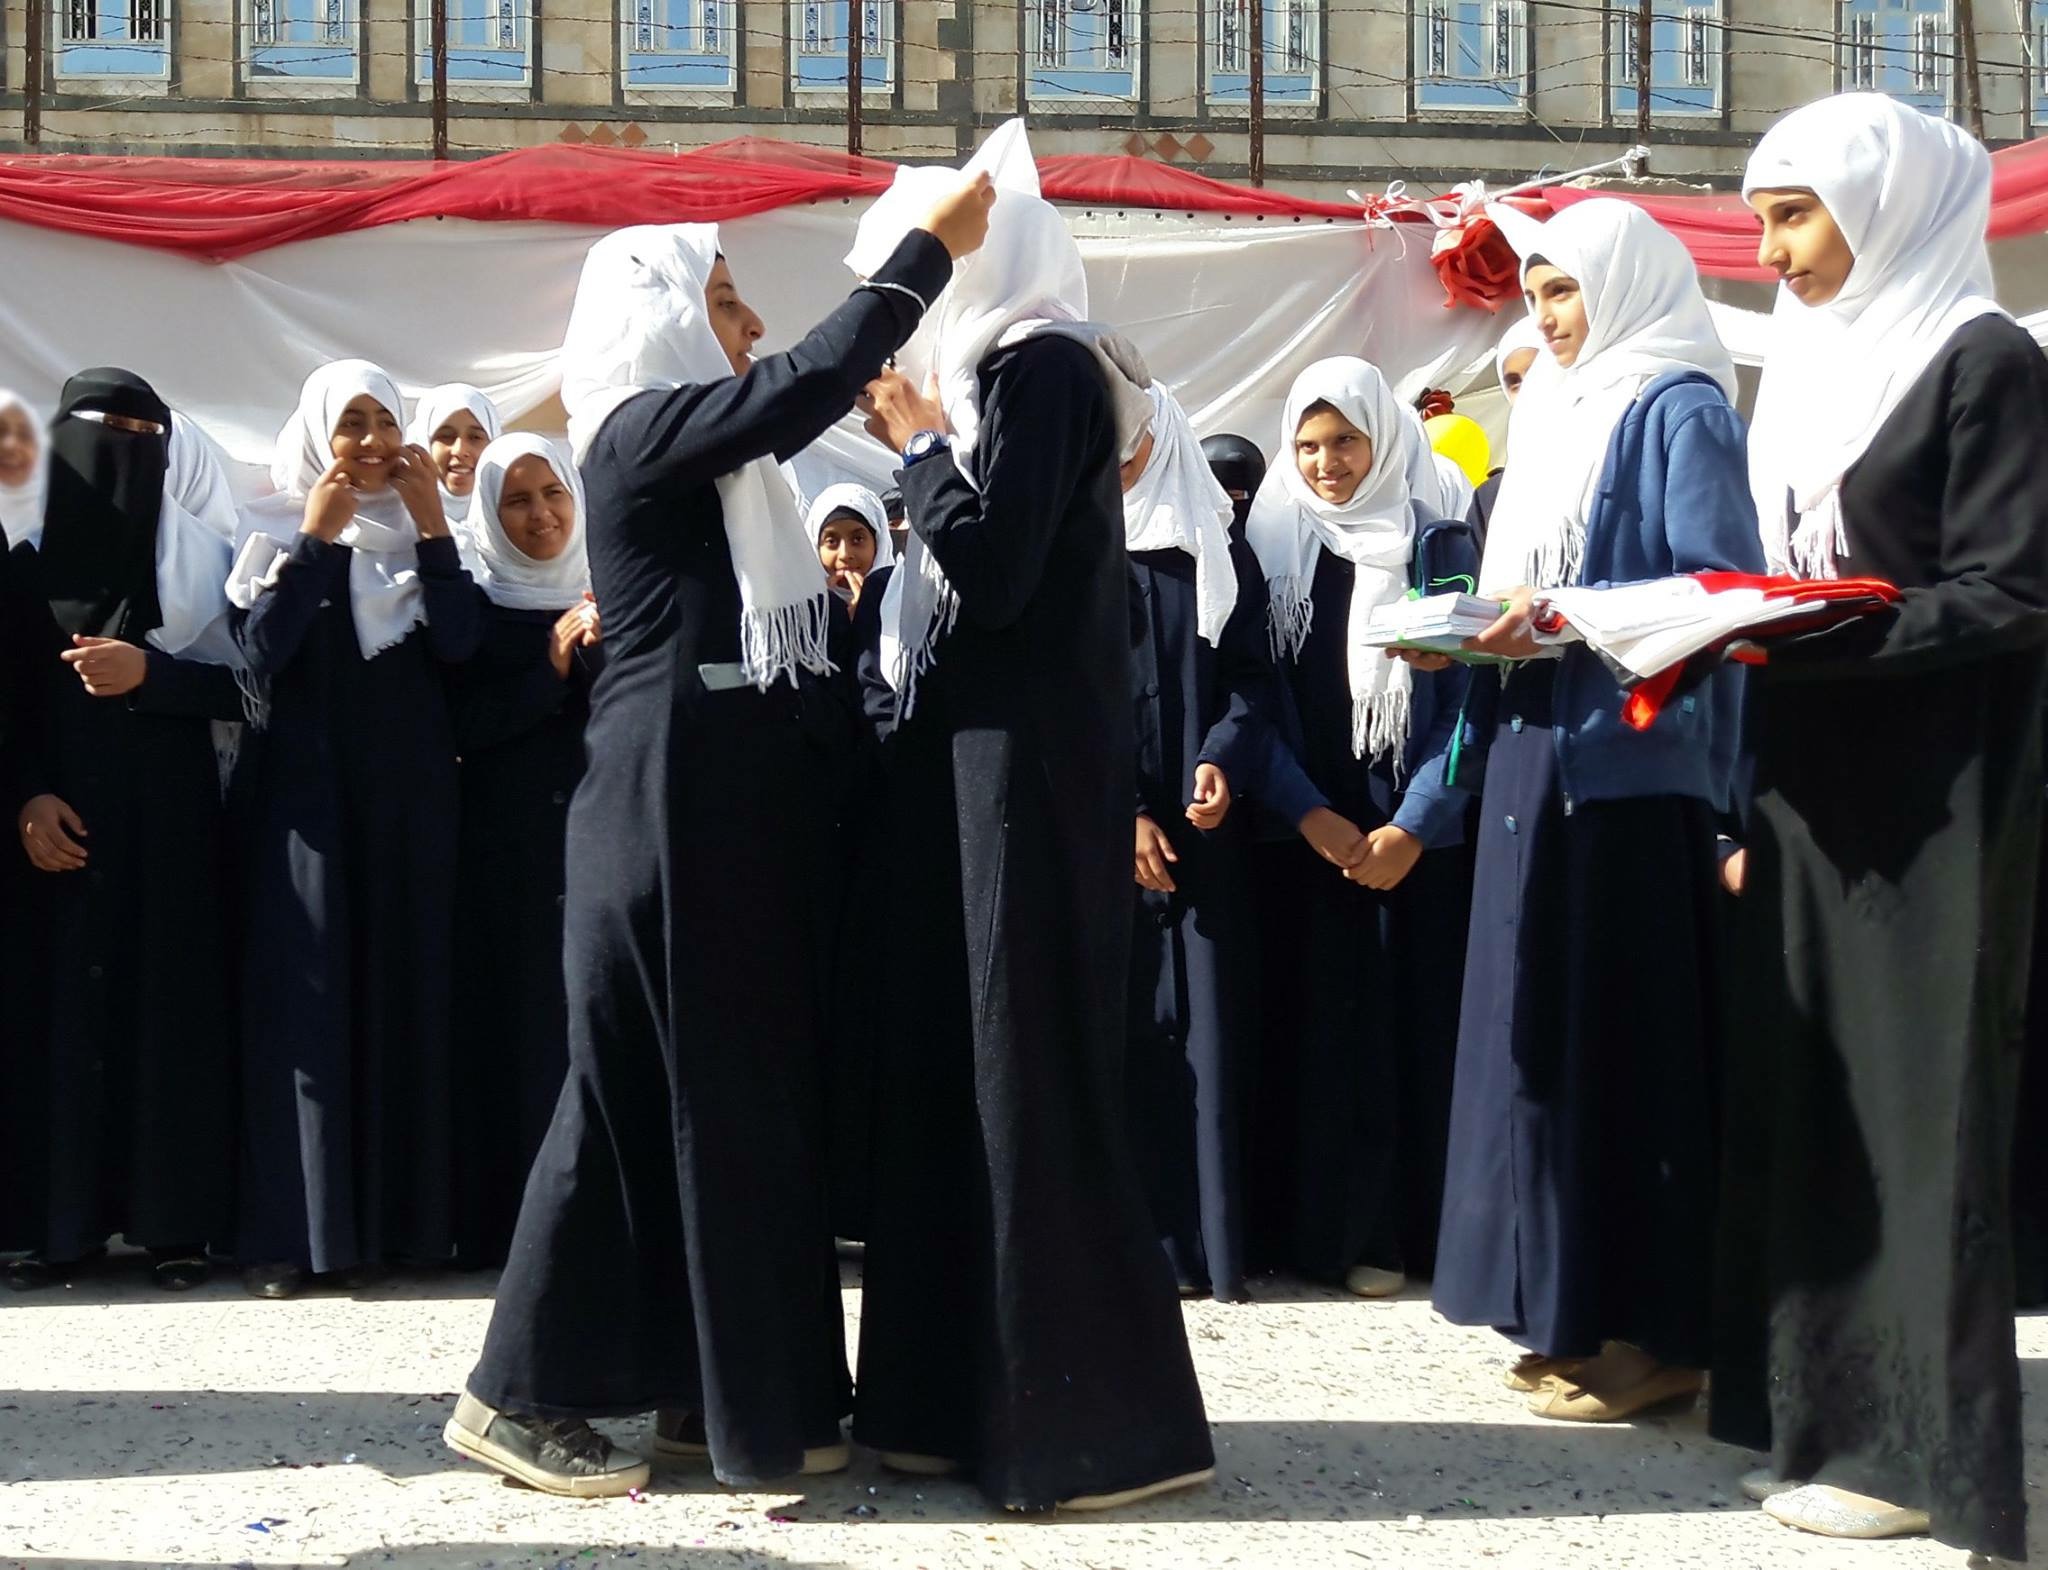 صنعاء: مديرة مدرسة تعاقب طالبات في البرد القارس لرفضهن ترديد "الصرخة"